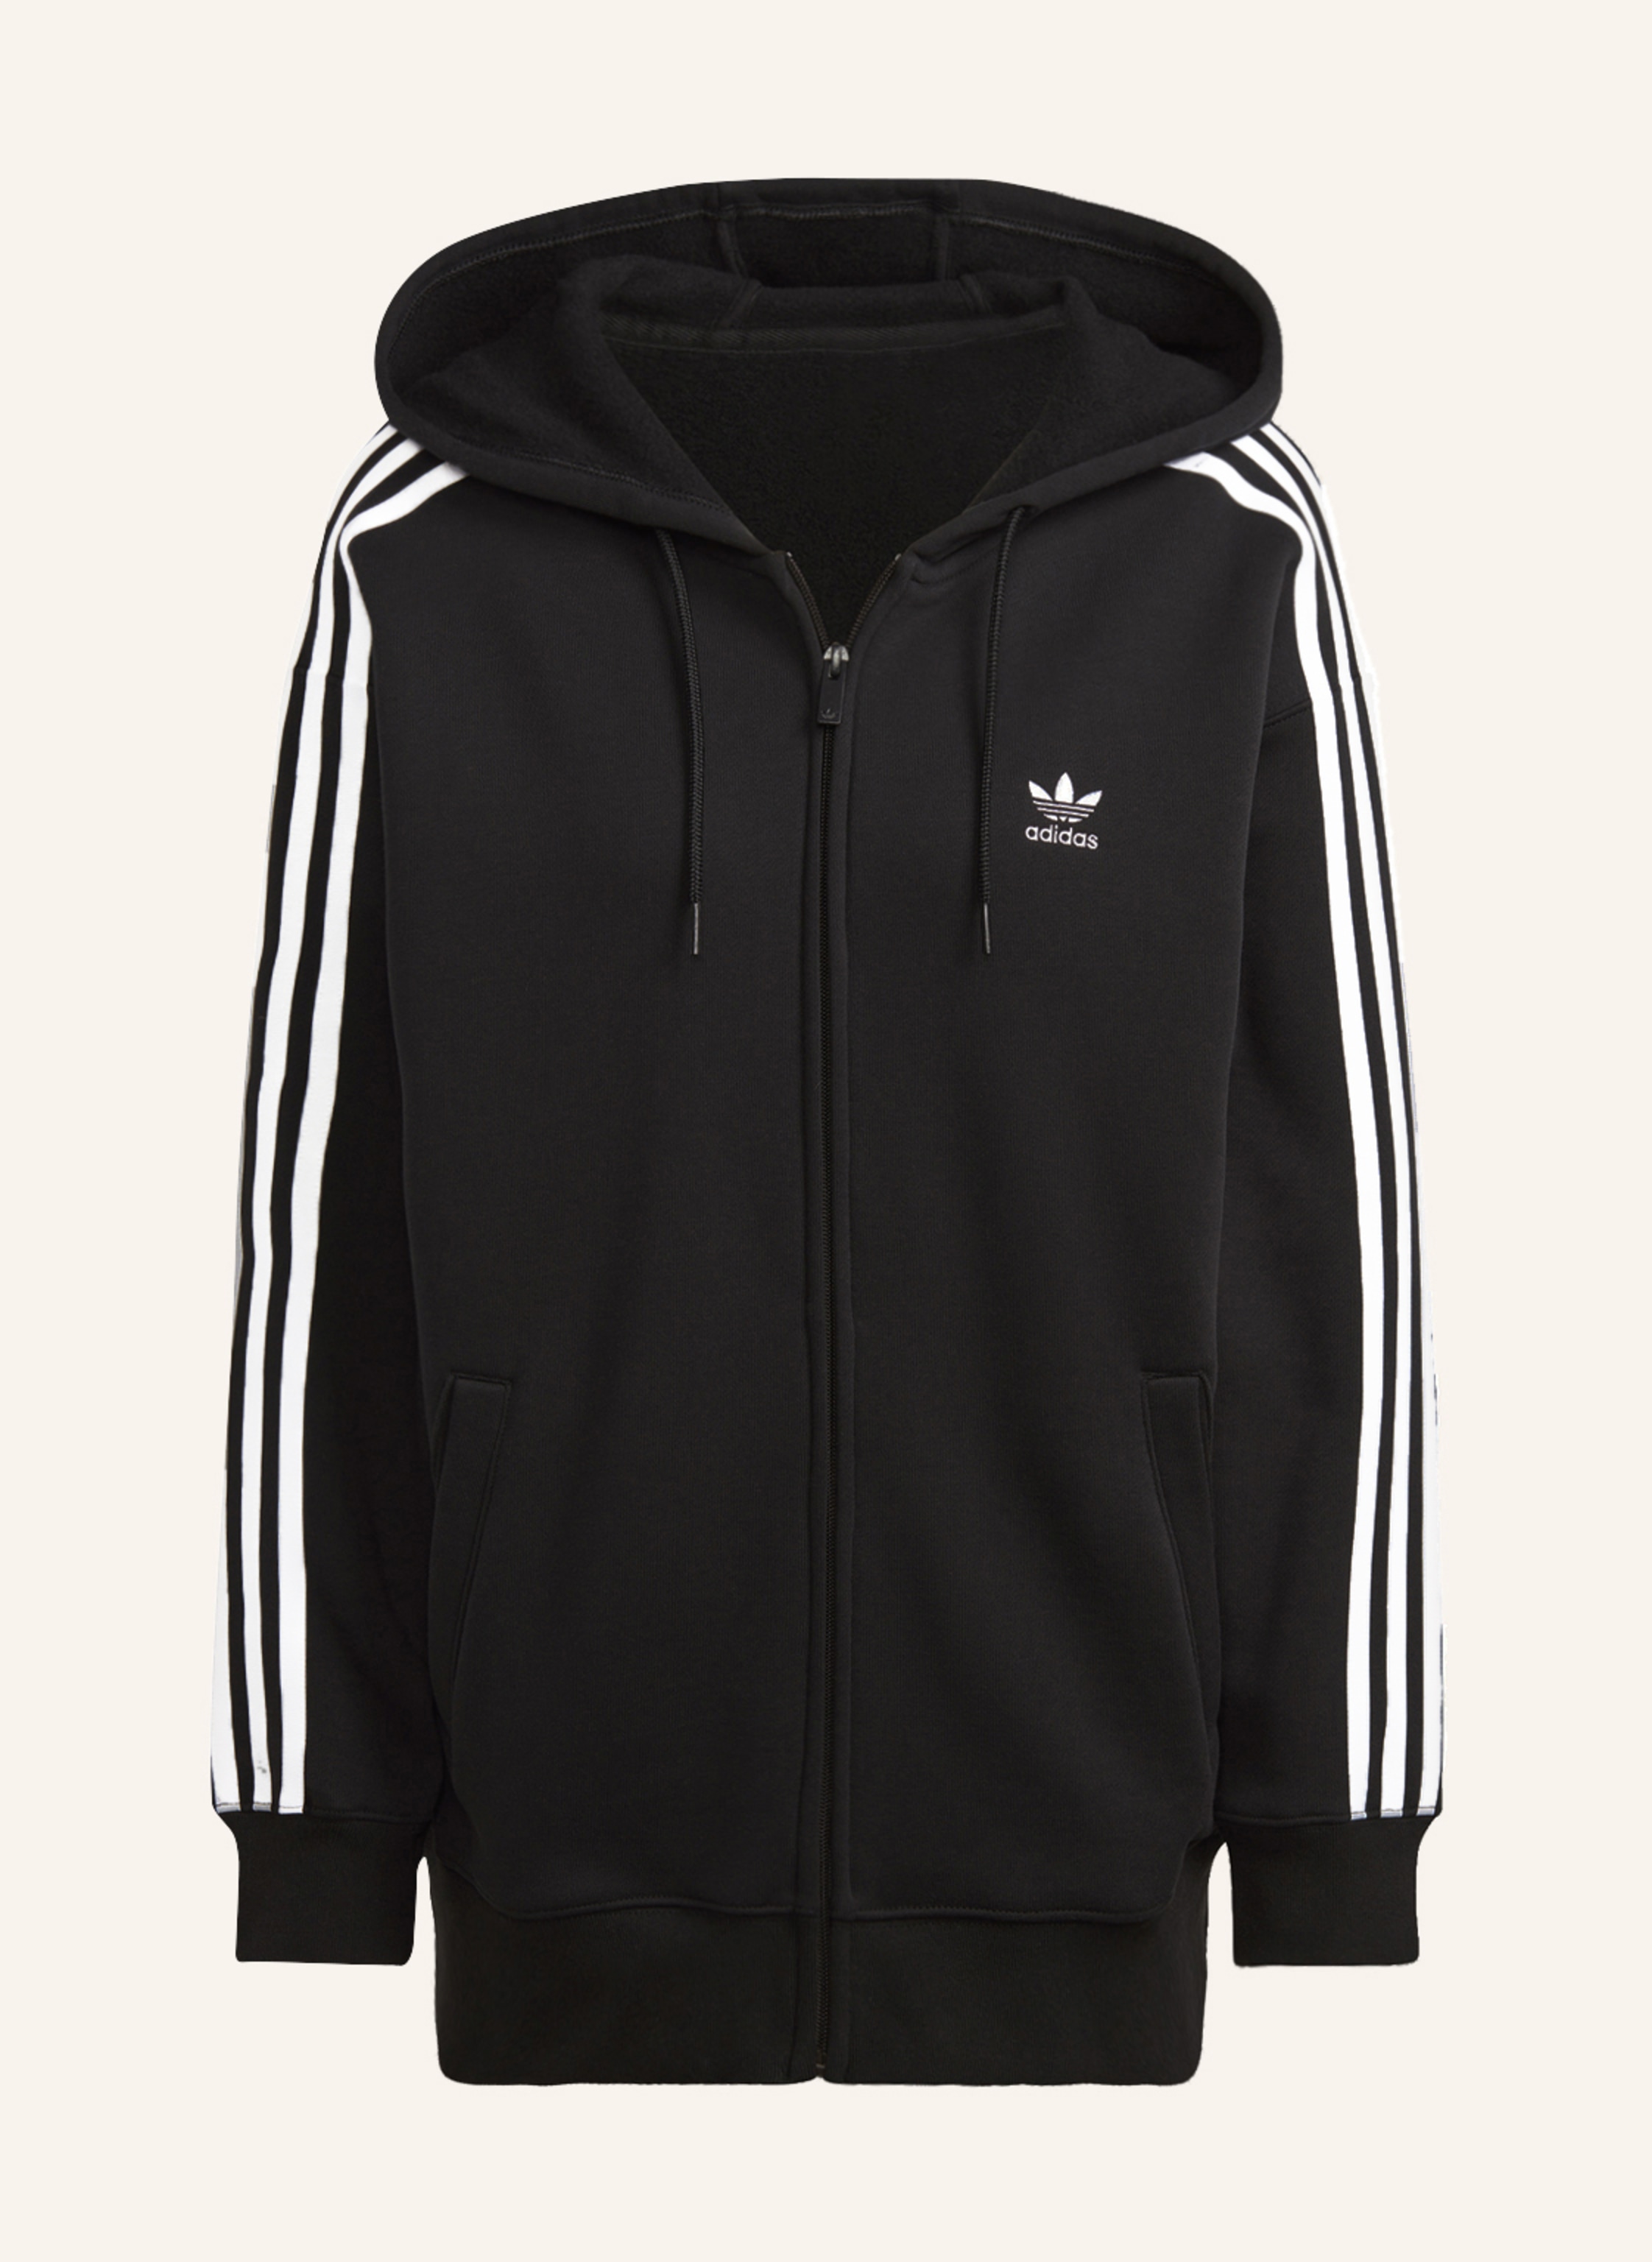 adidas Originals Oversized sweat jacket ADICOLOR CLASSICS in black/ white